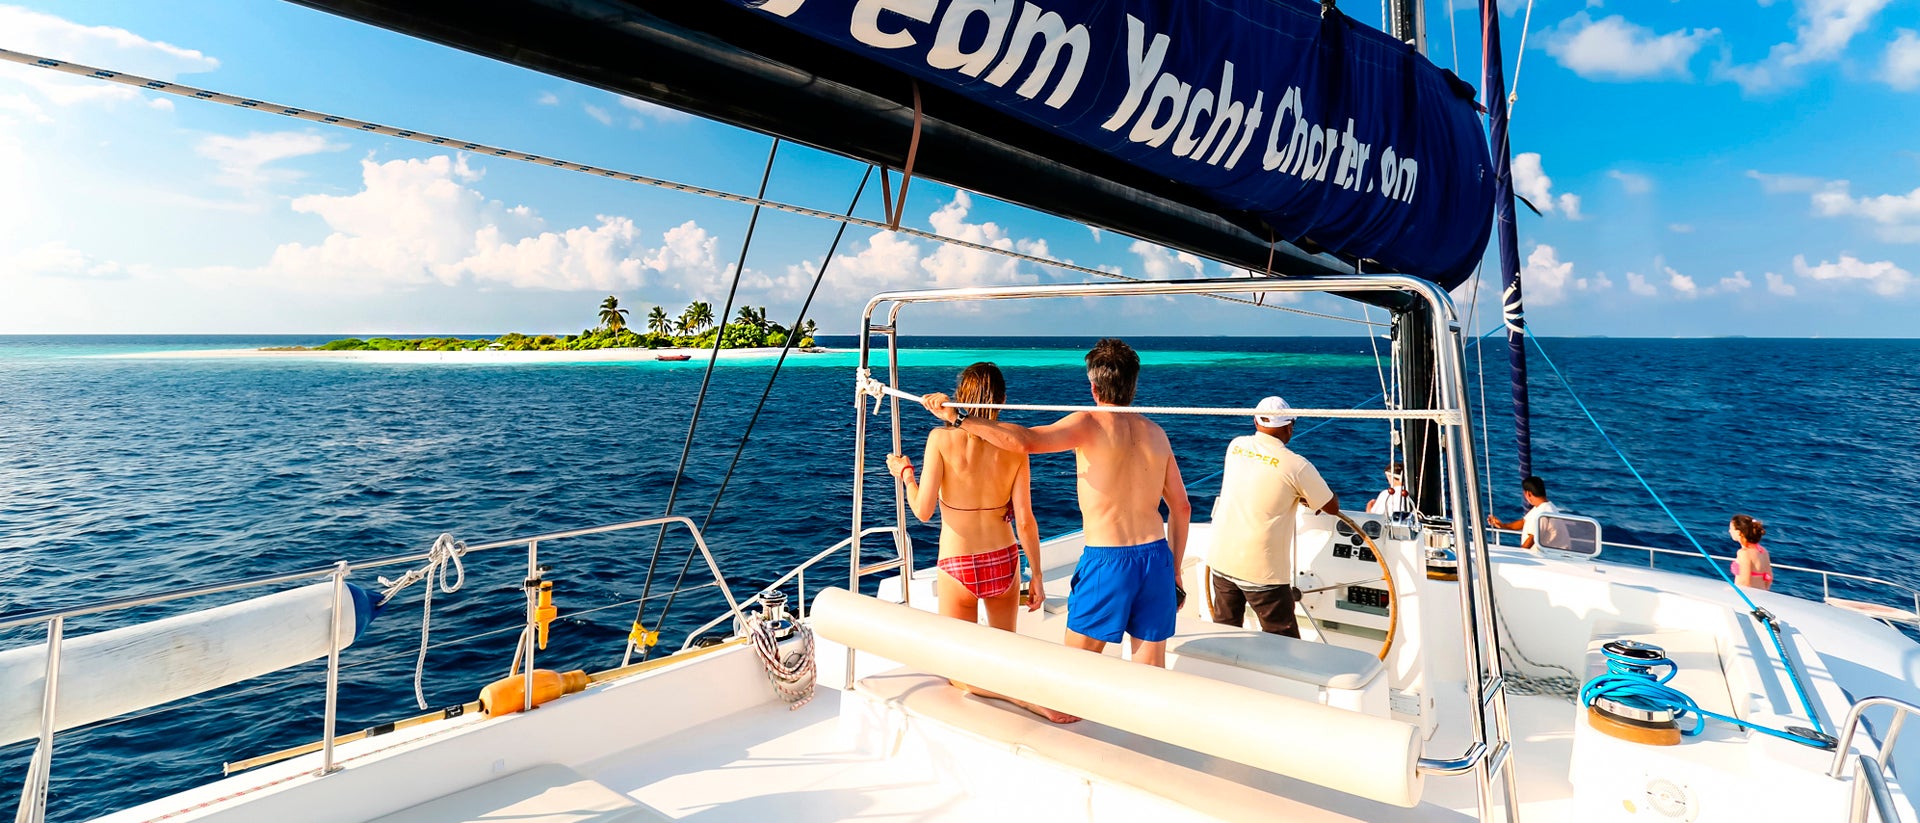 Maldives couple vacation sailing catamaran charter 